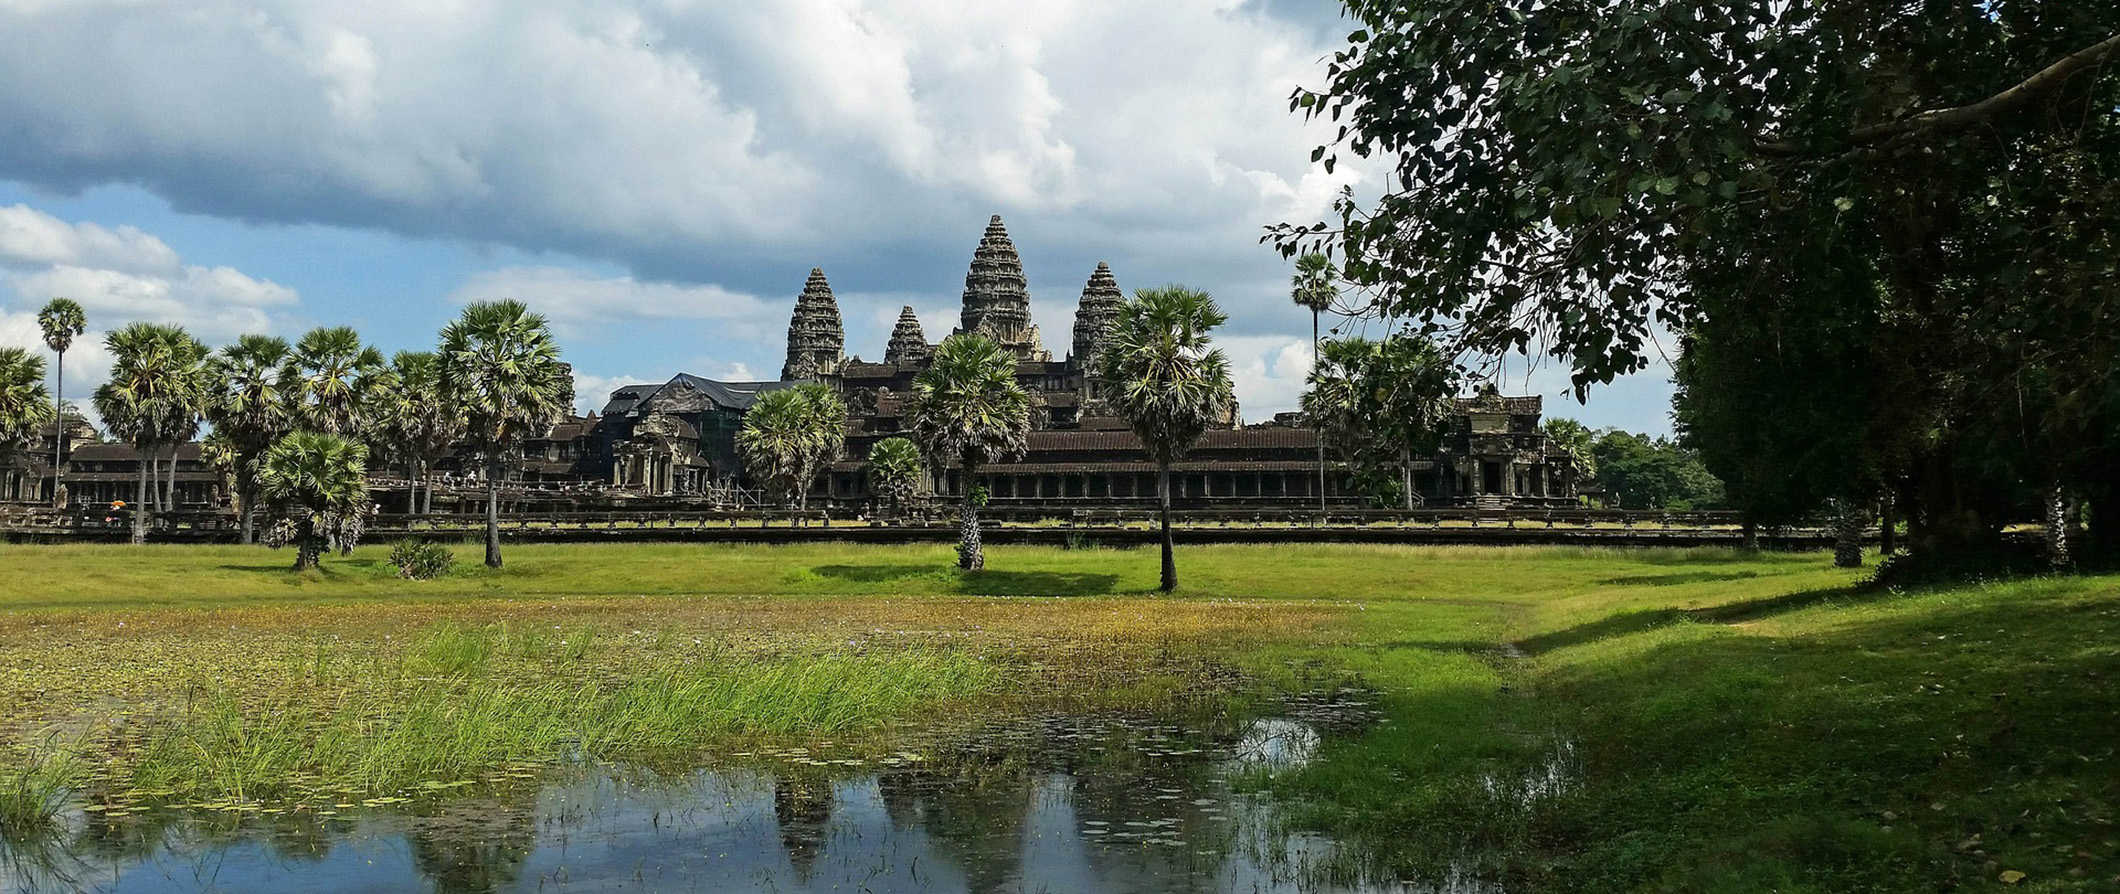 O histórico complexo de templos de Angkor Wat, no Camboja, refletido nas águas calmas